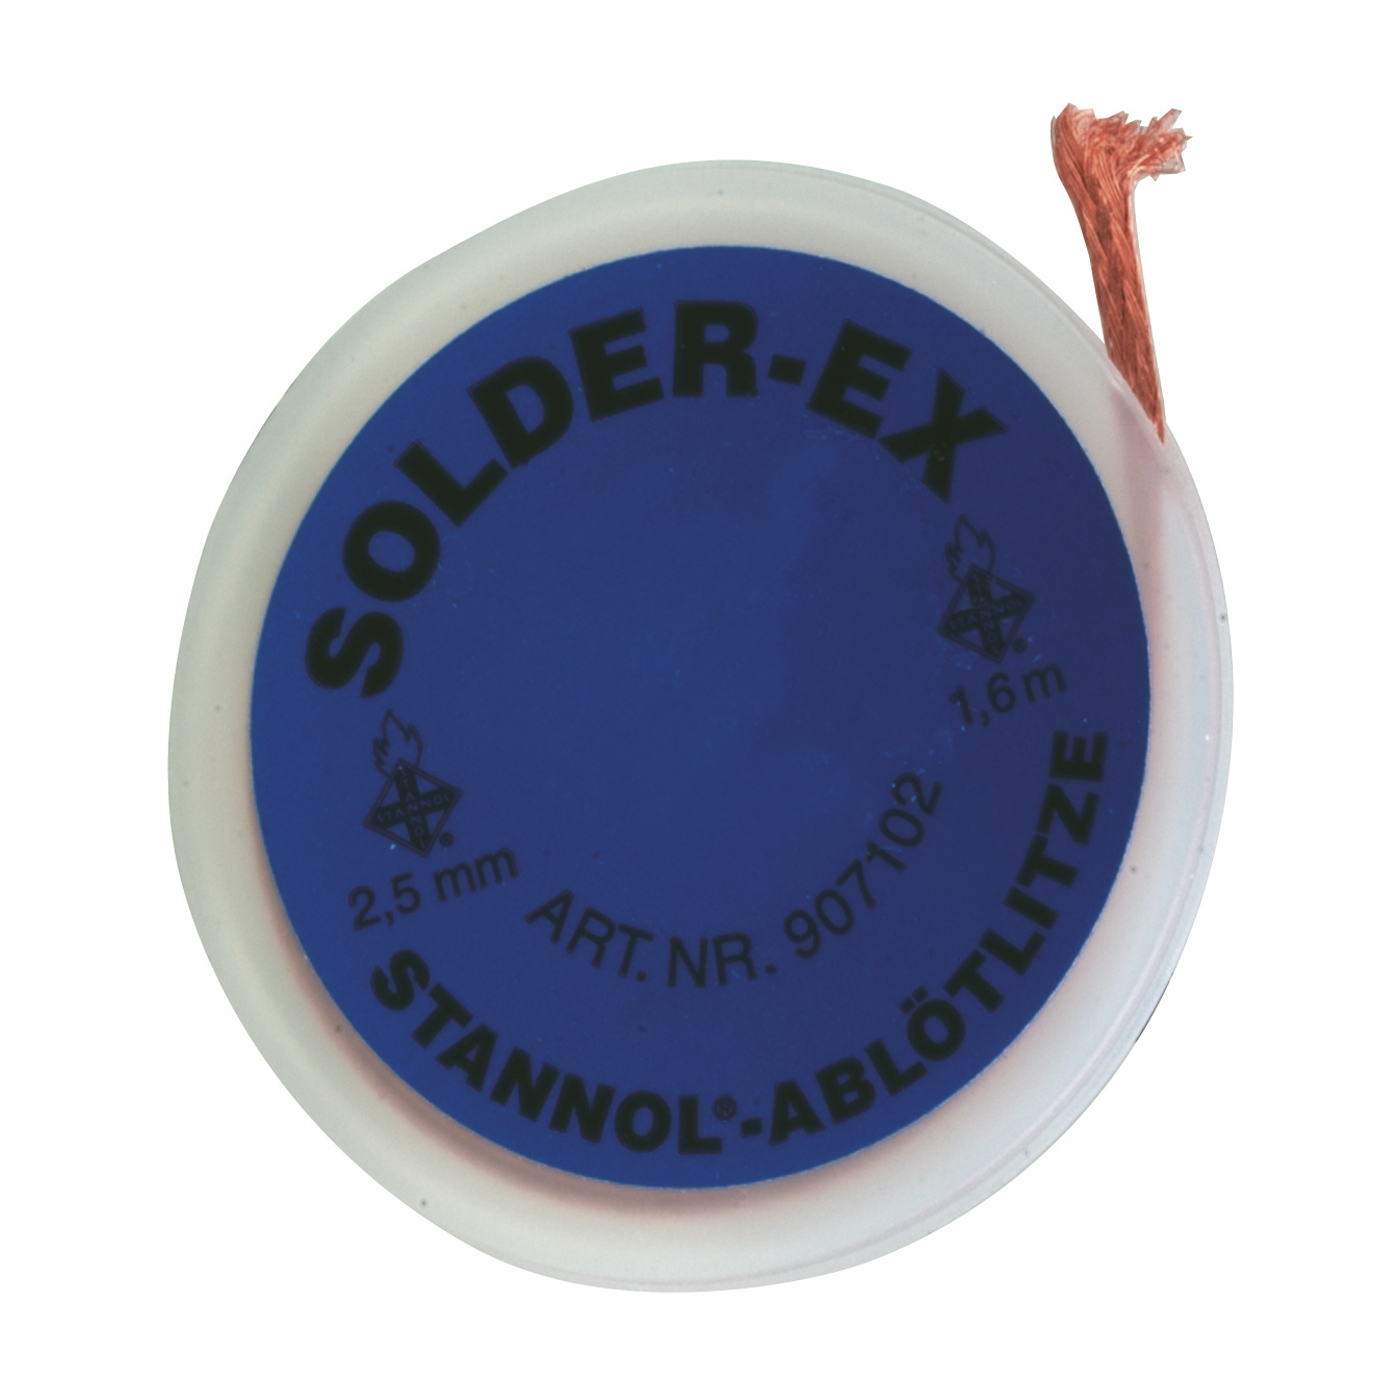 Solder-Ex Desoldering Braid - 1600 mm